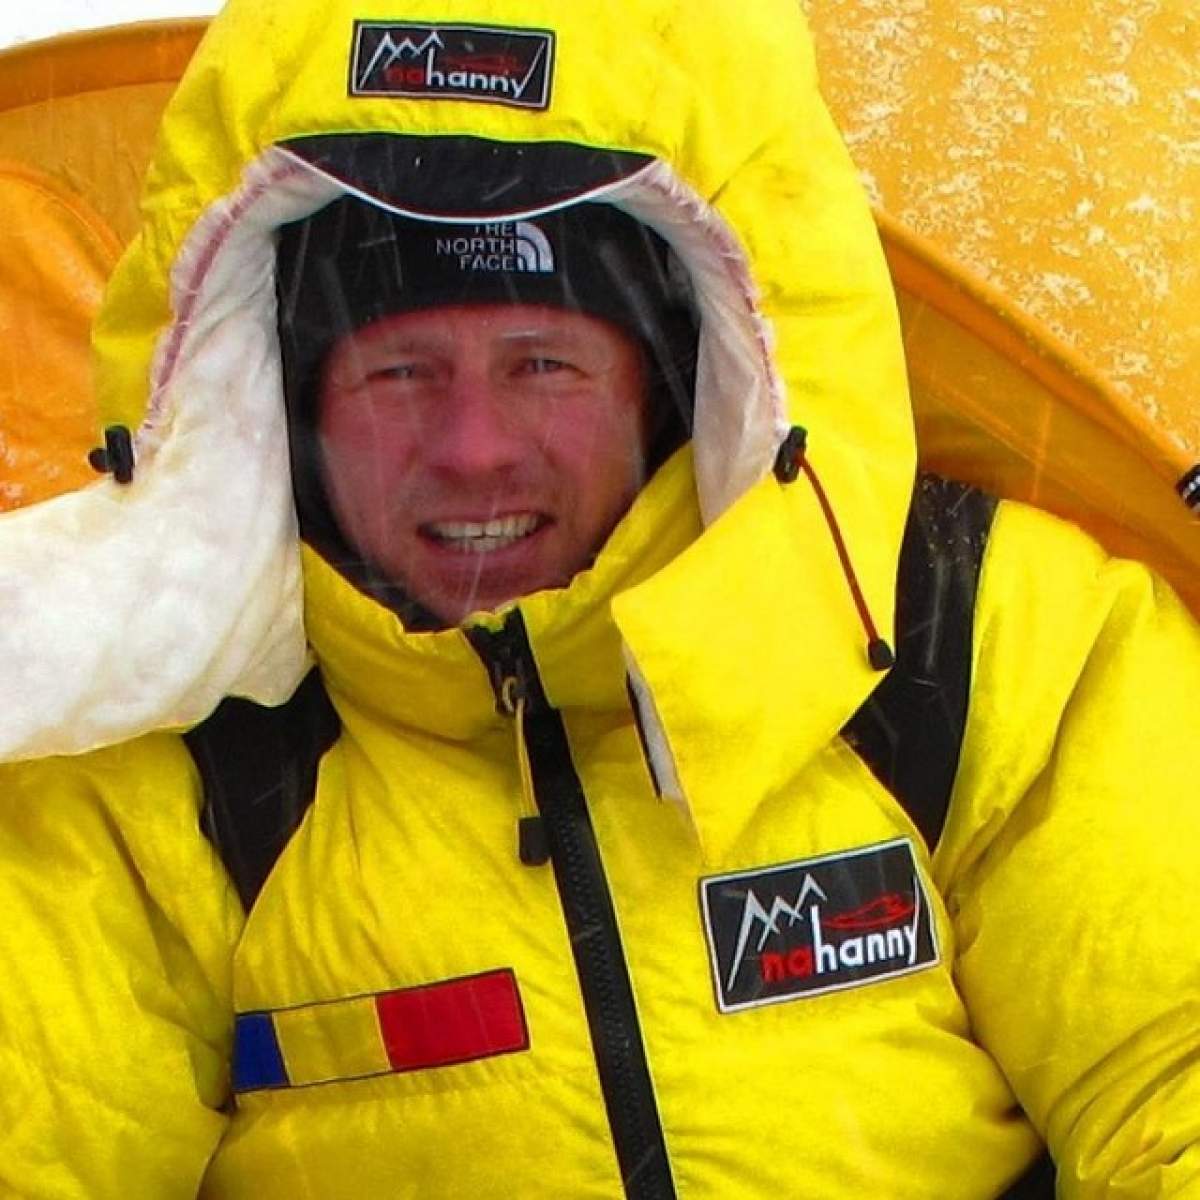 Răsturnare de situaţie! Alpinistul român Zsolt Torok se află în stare critică